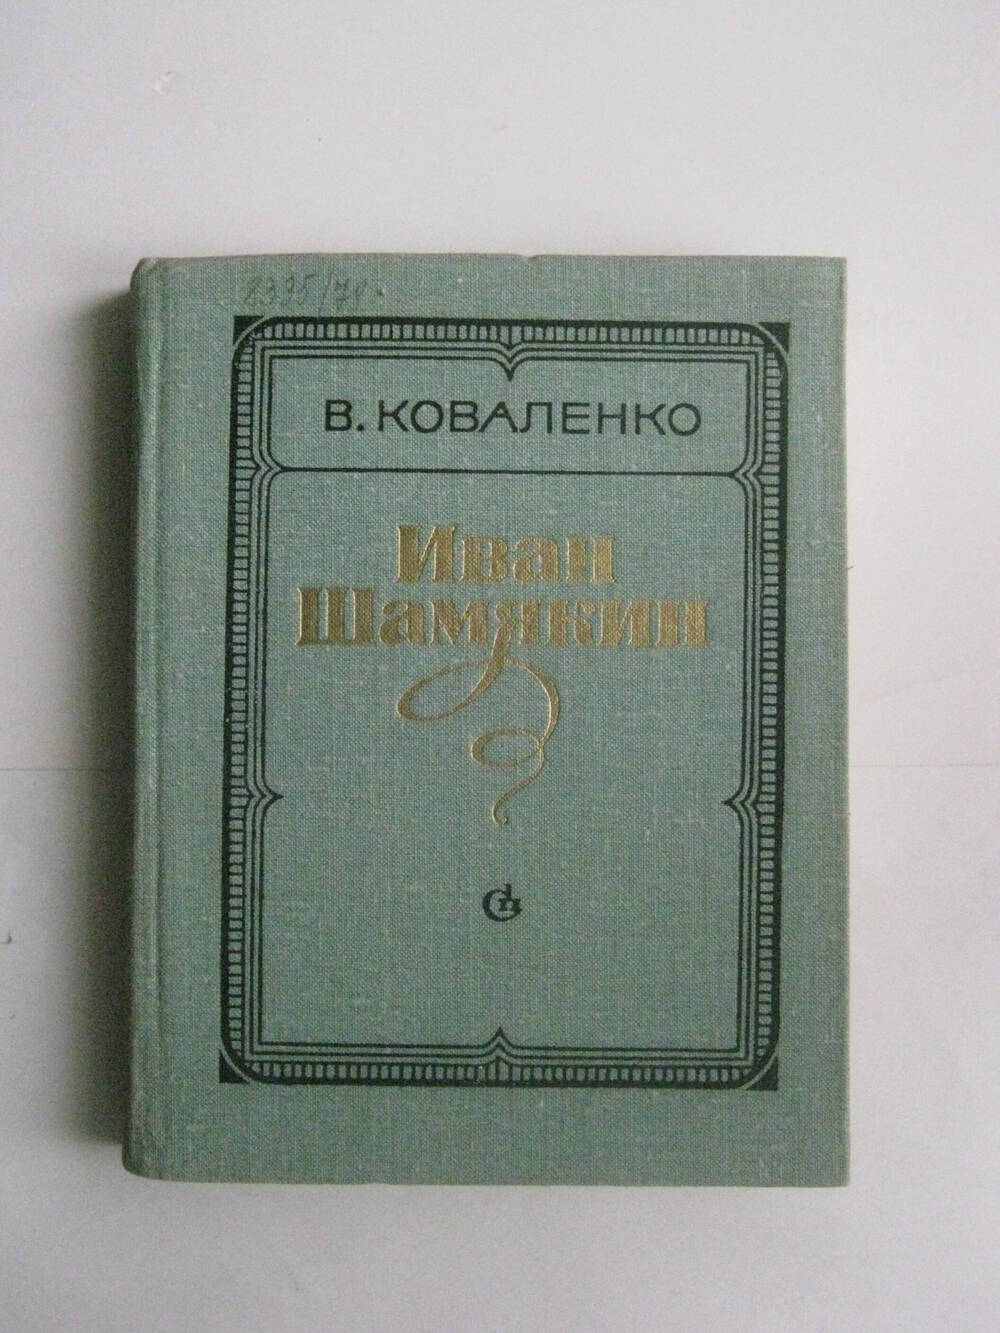 Книга. Коваленко В. Иван Шемякин. – М.6 сов. писатель, 1979.